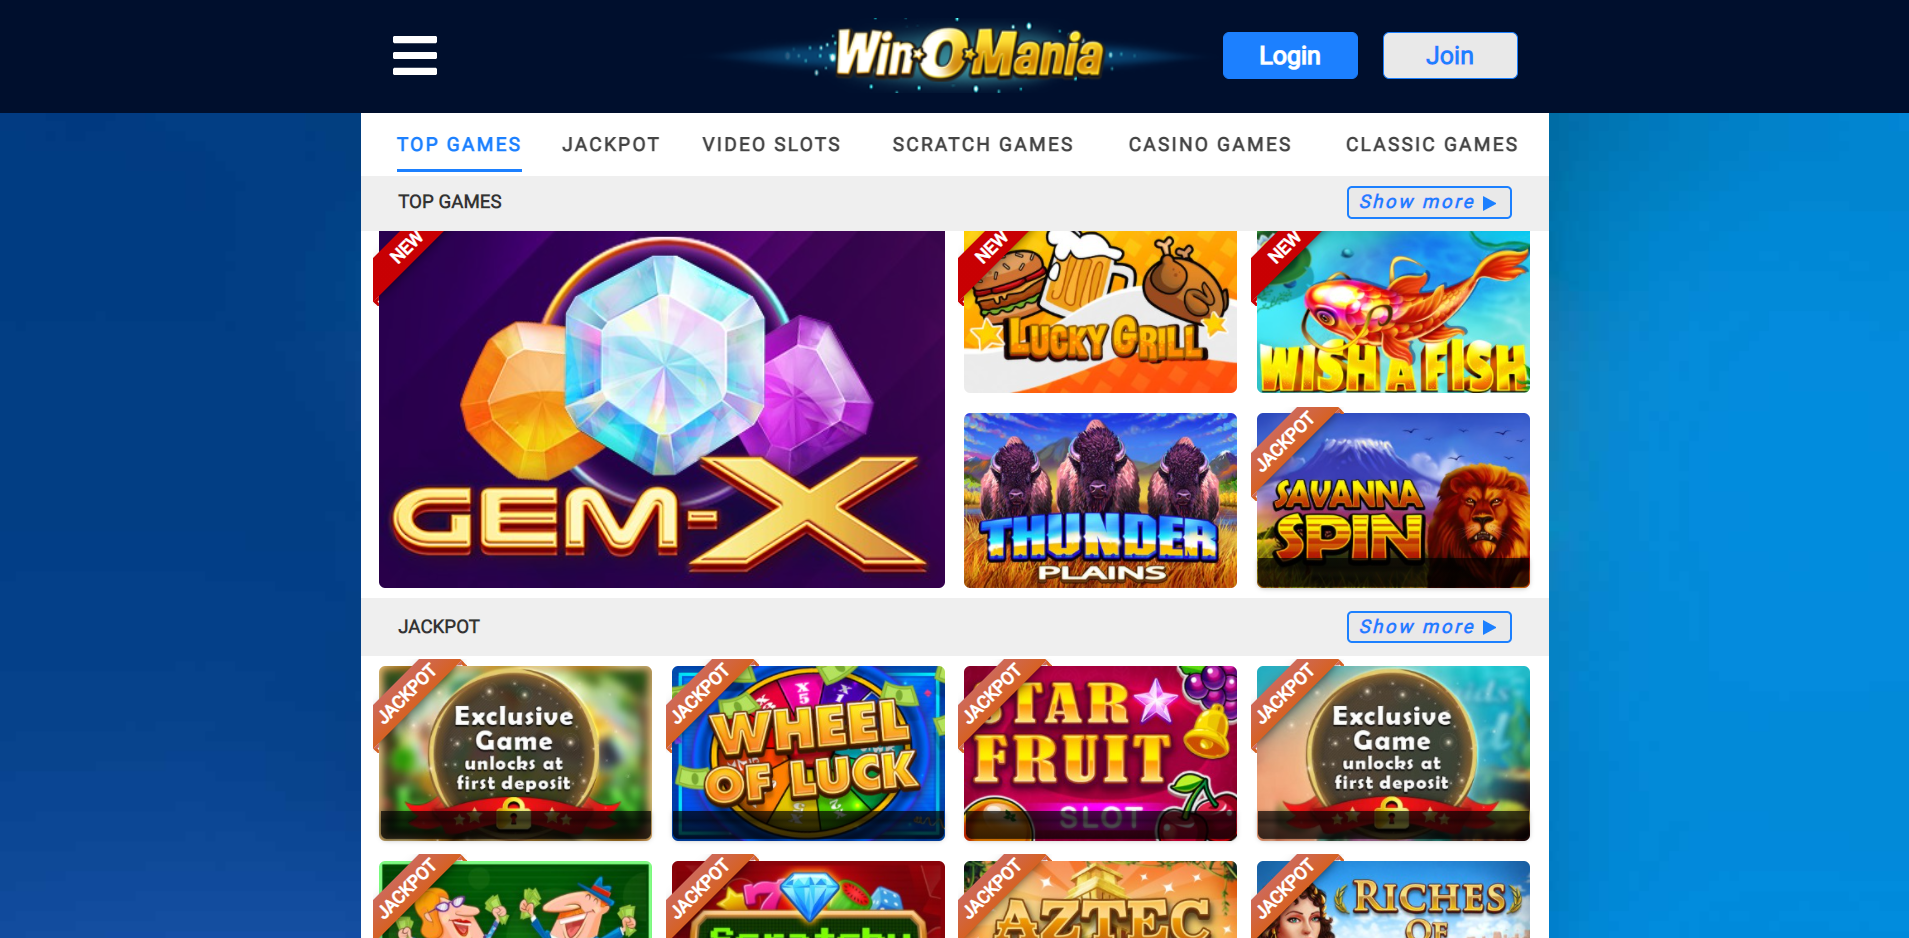 WinOMania Casino Games